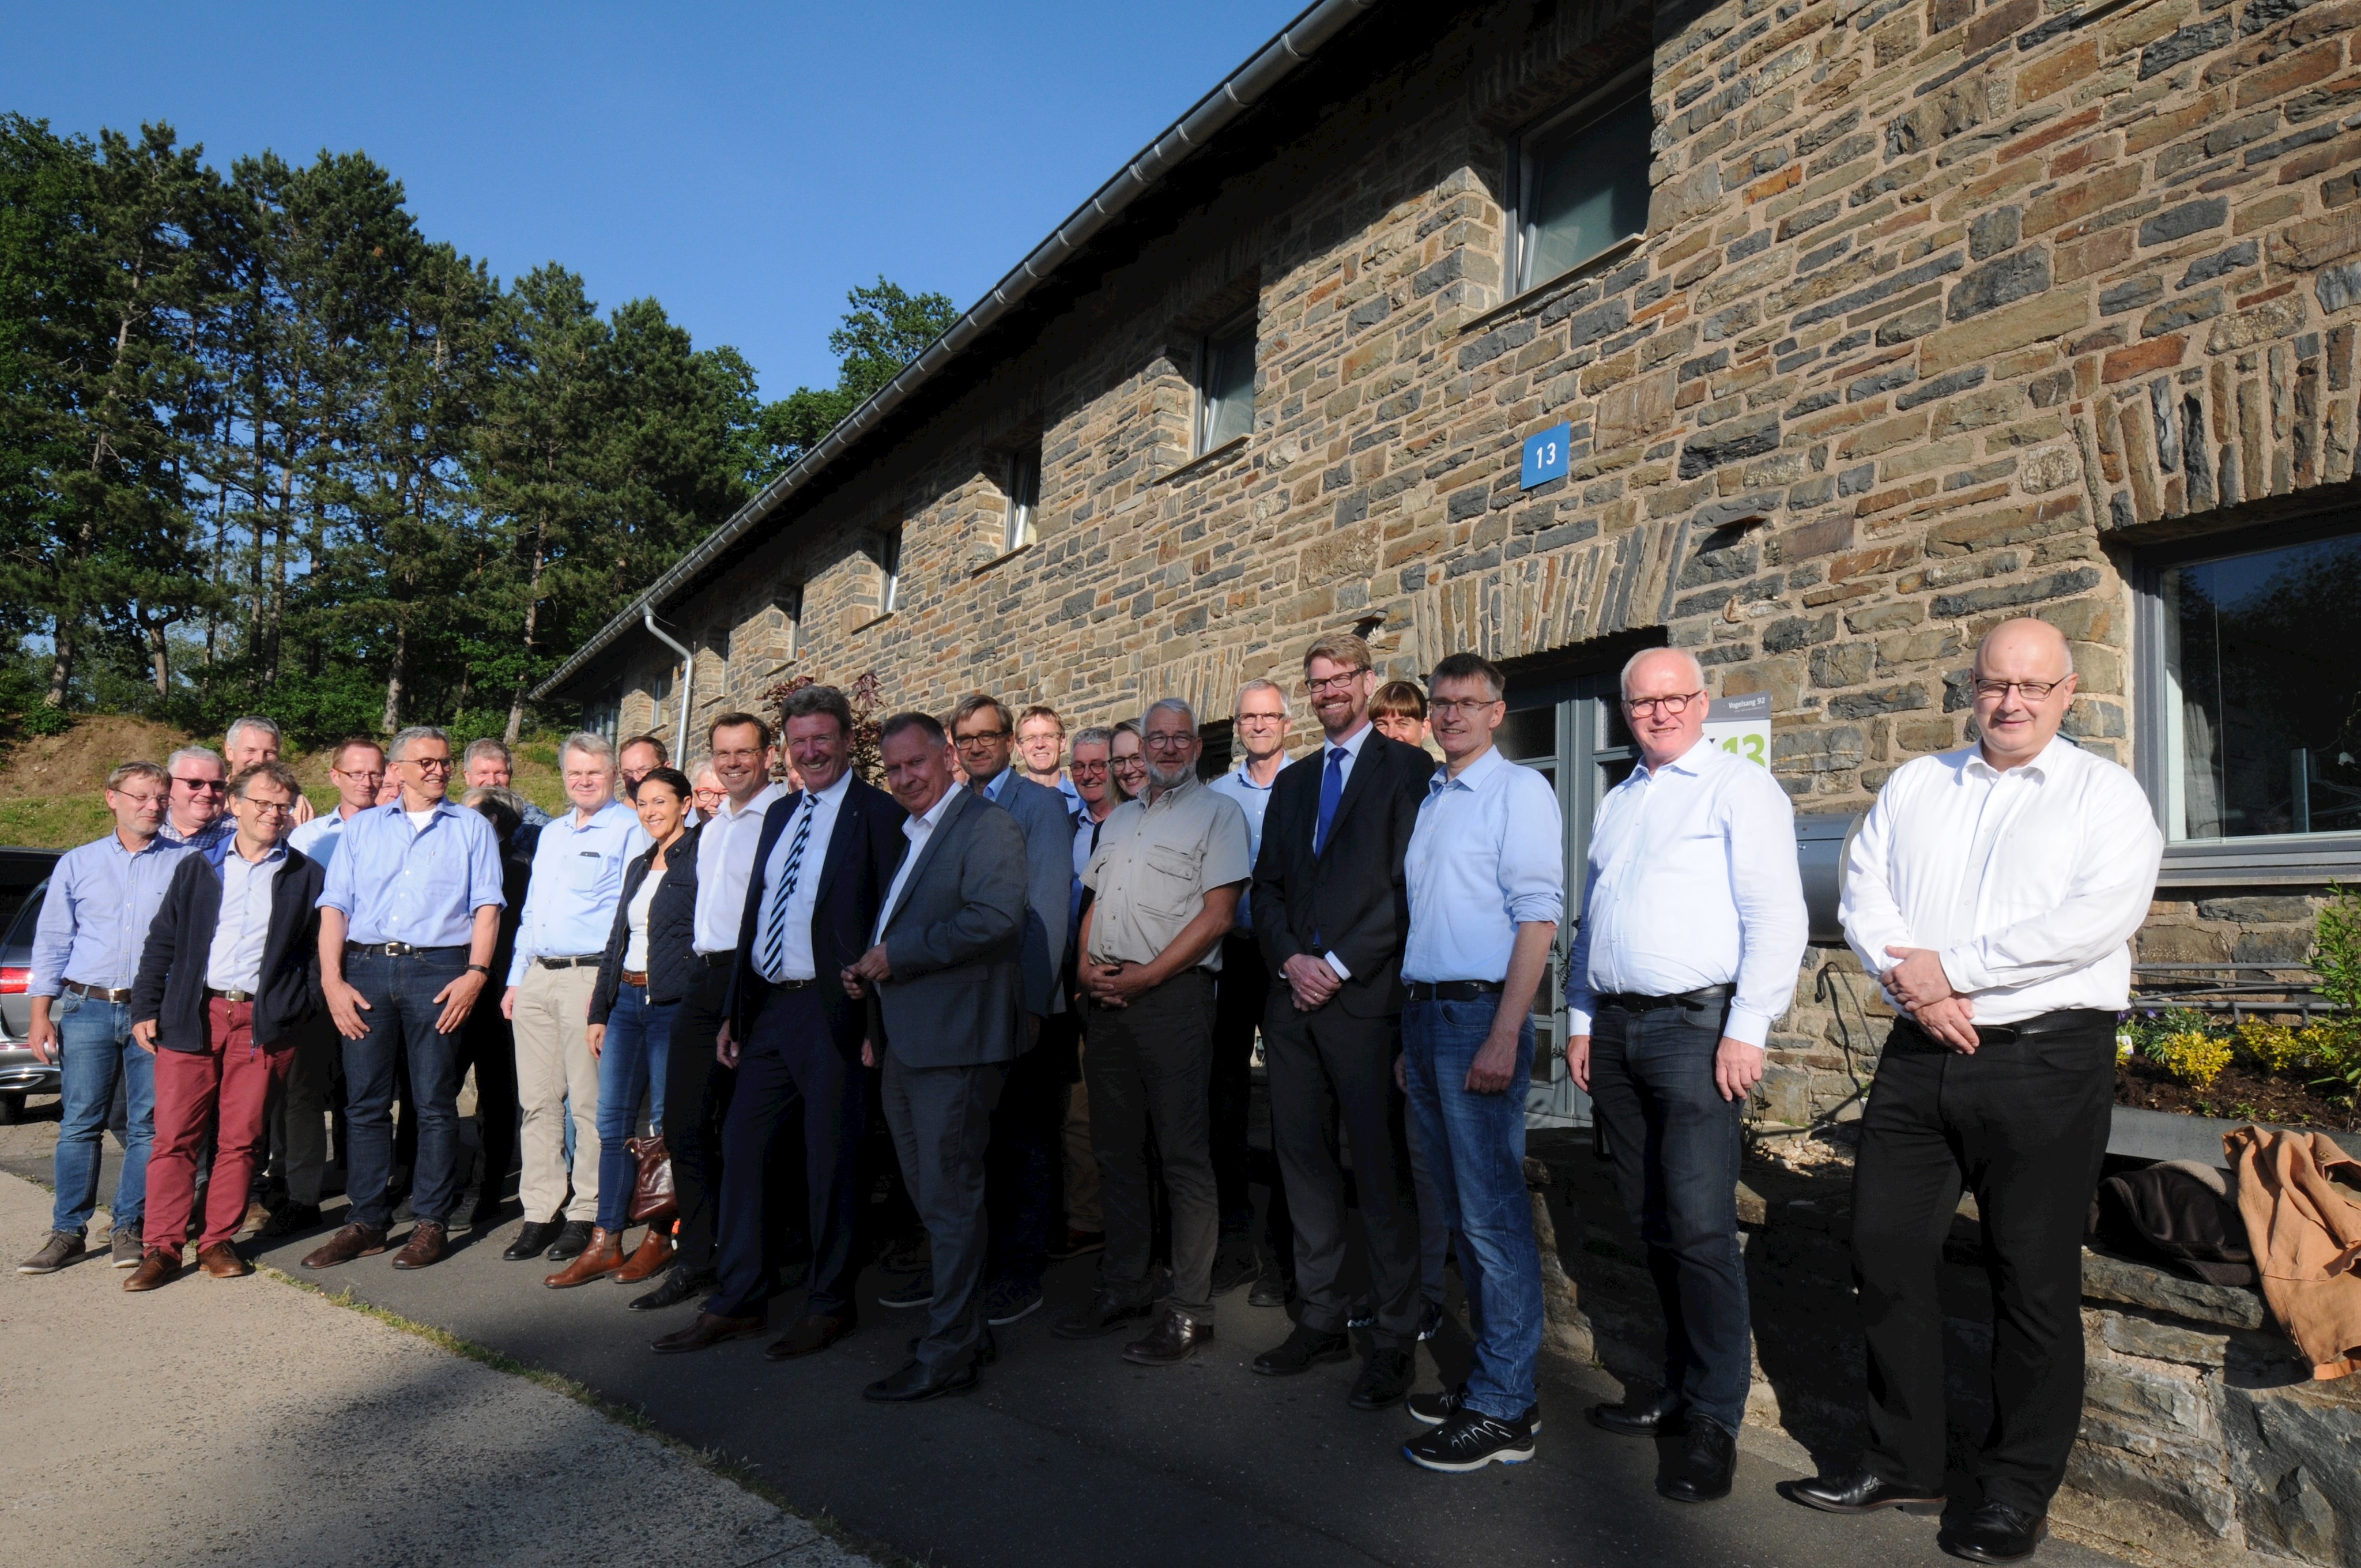 Der Ausschuss für Verbraucherschutz und Veterinärwesen des LKT NRW tagte anlässlich seiner Klausurtagung auf Burg Vogelsang.